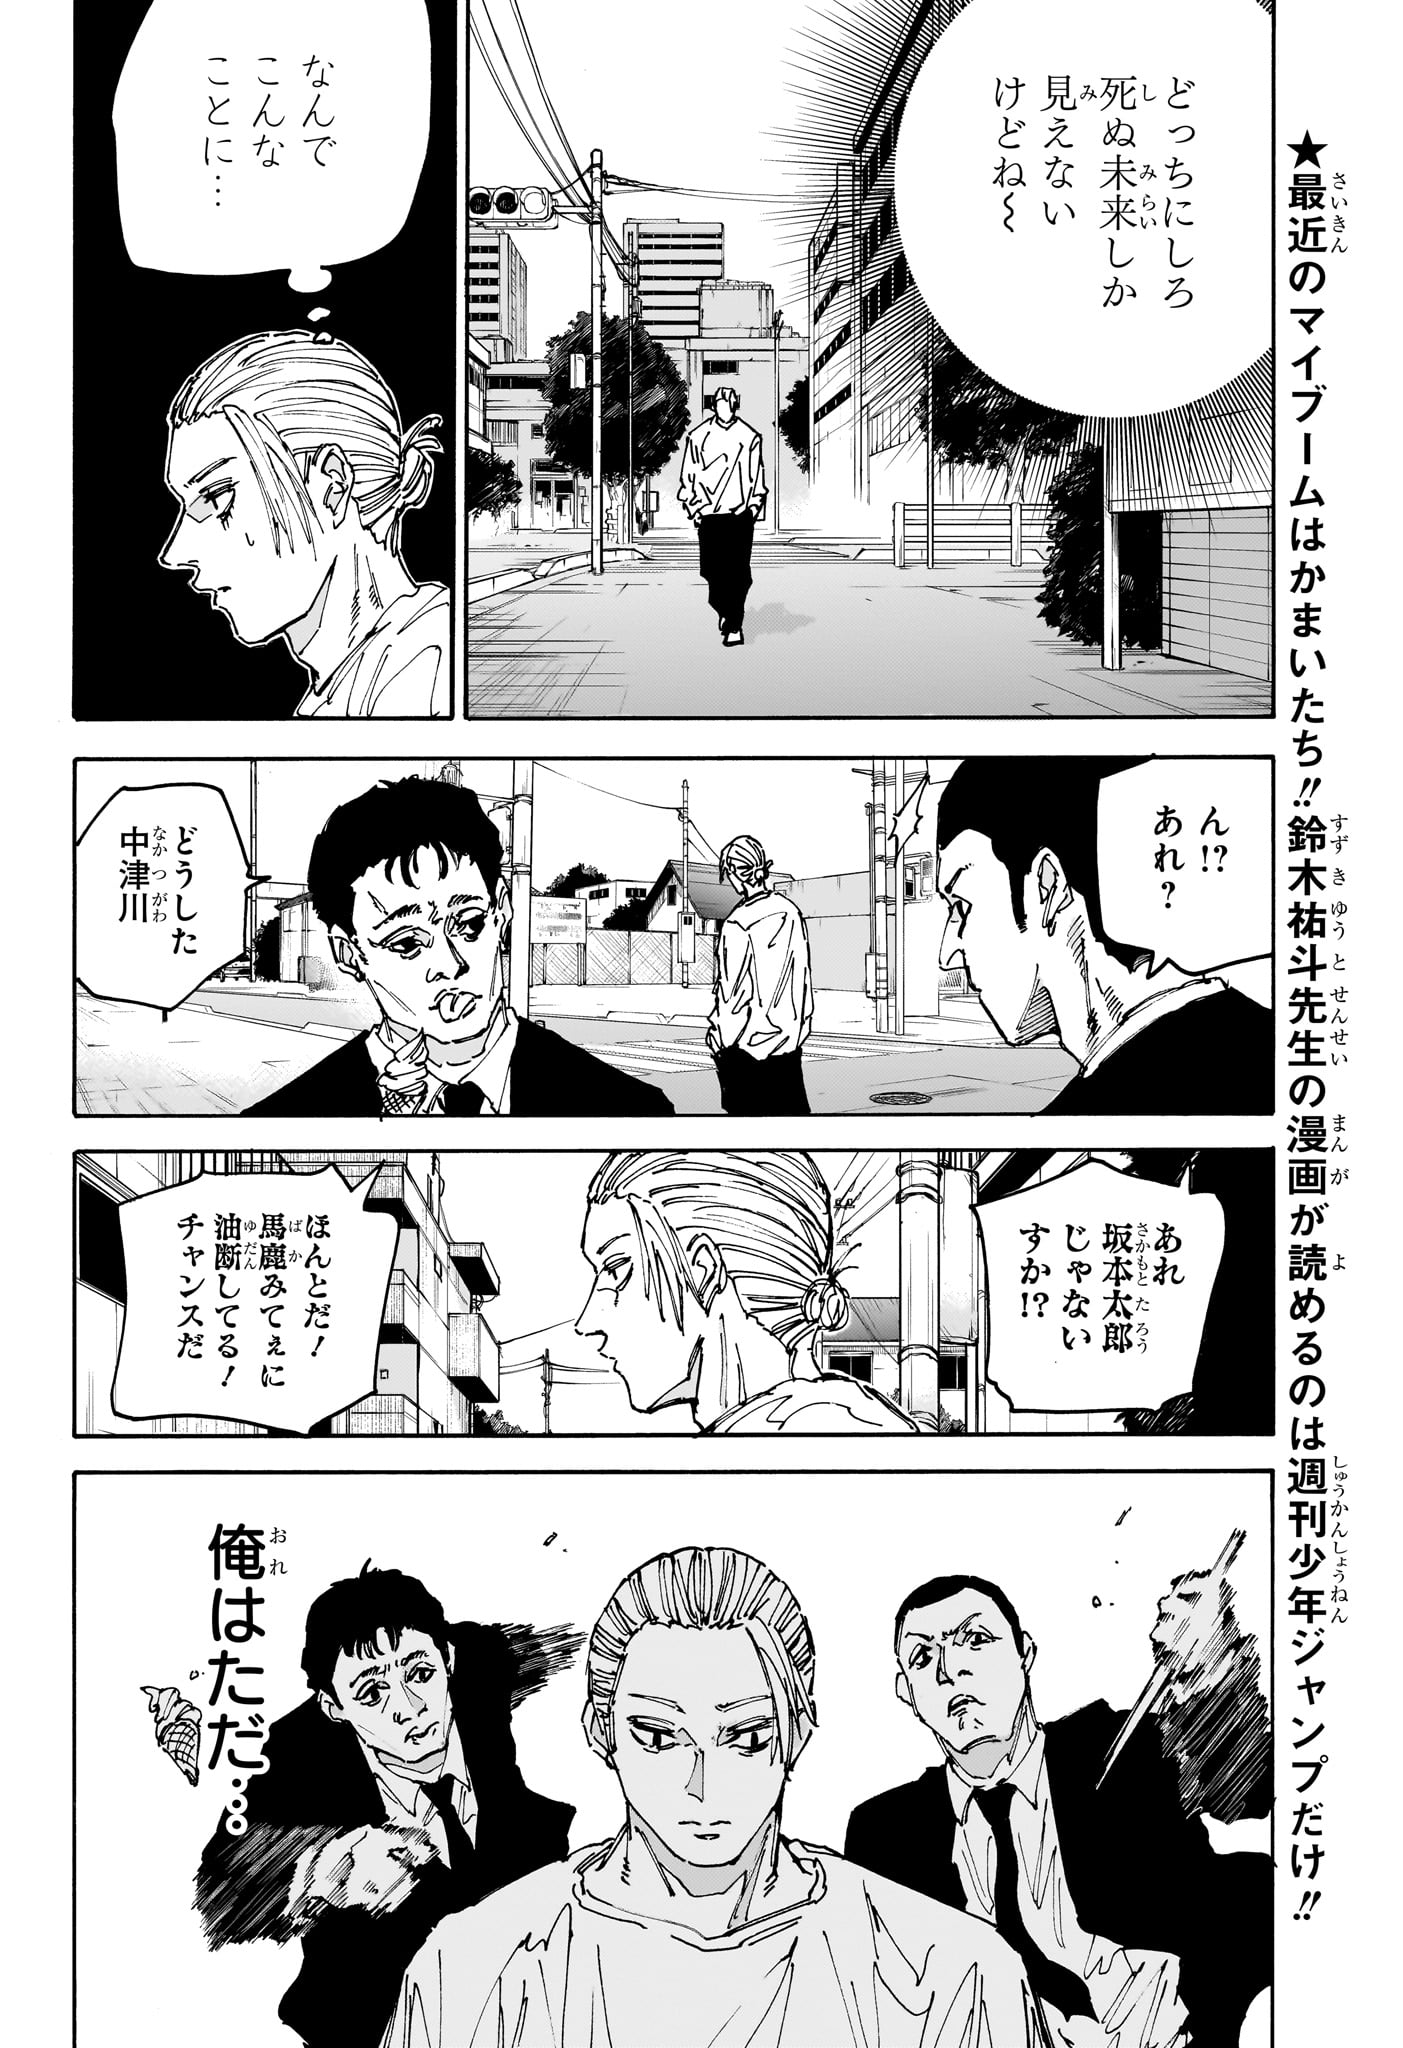 Sakamoto Days - Chapter 171 - Page 4